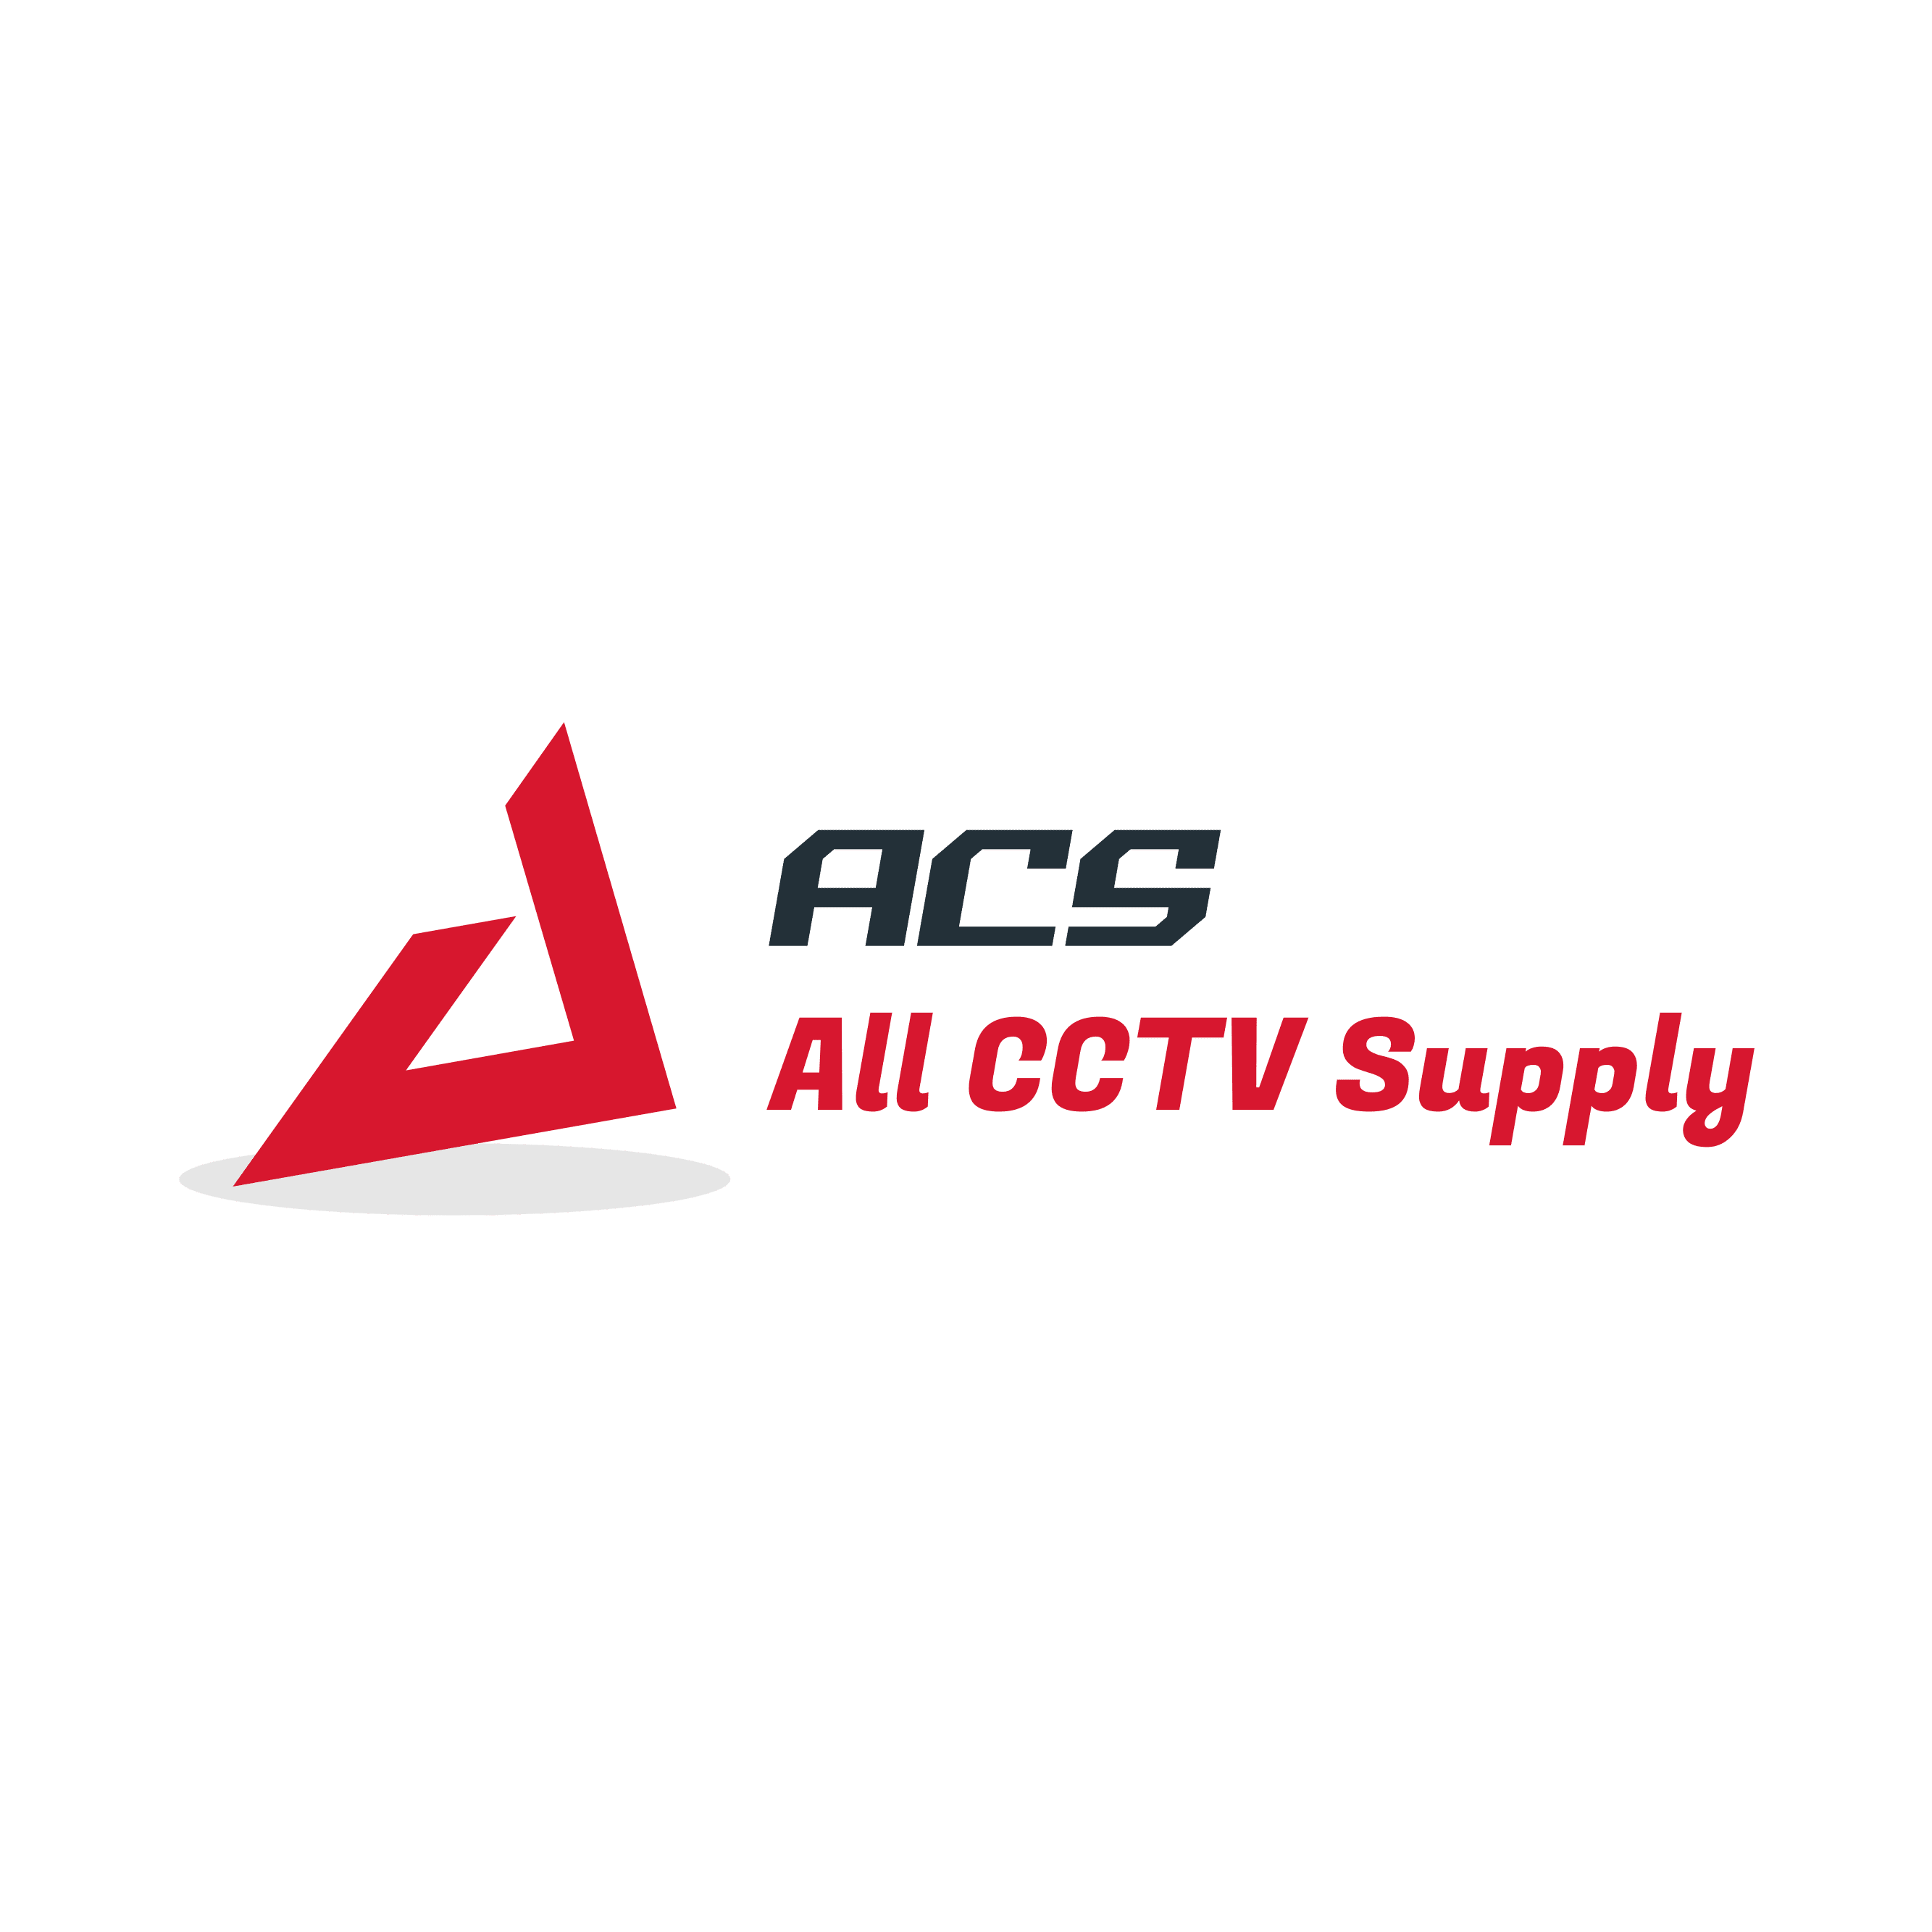 All CCTV Supply Logo